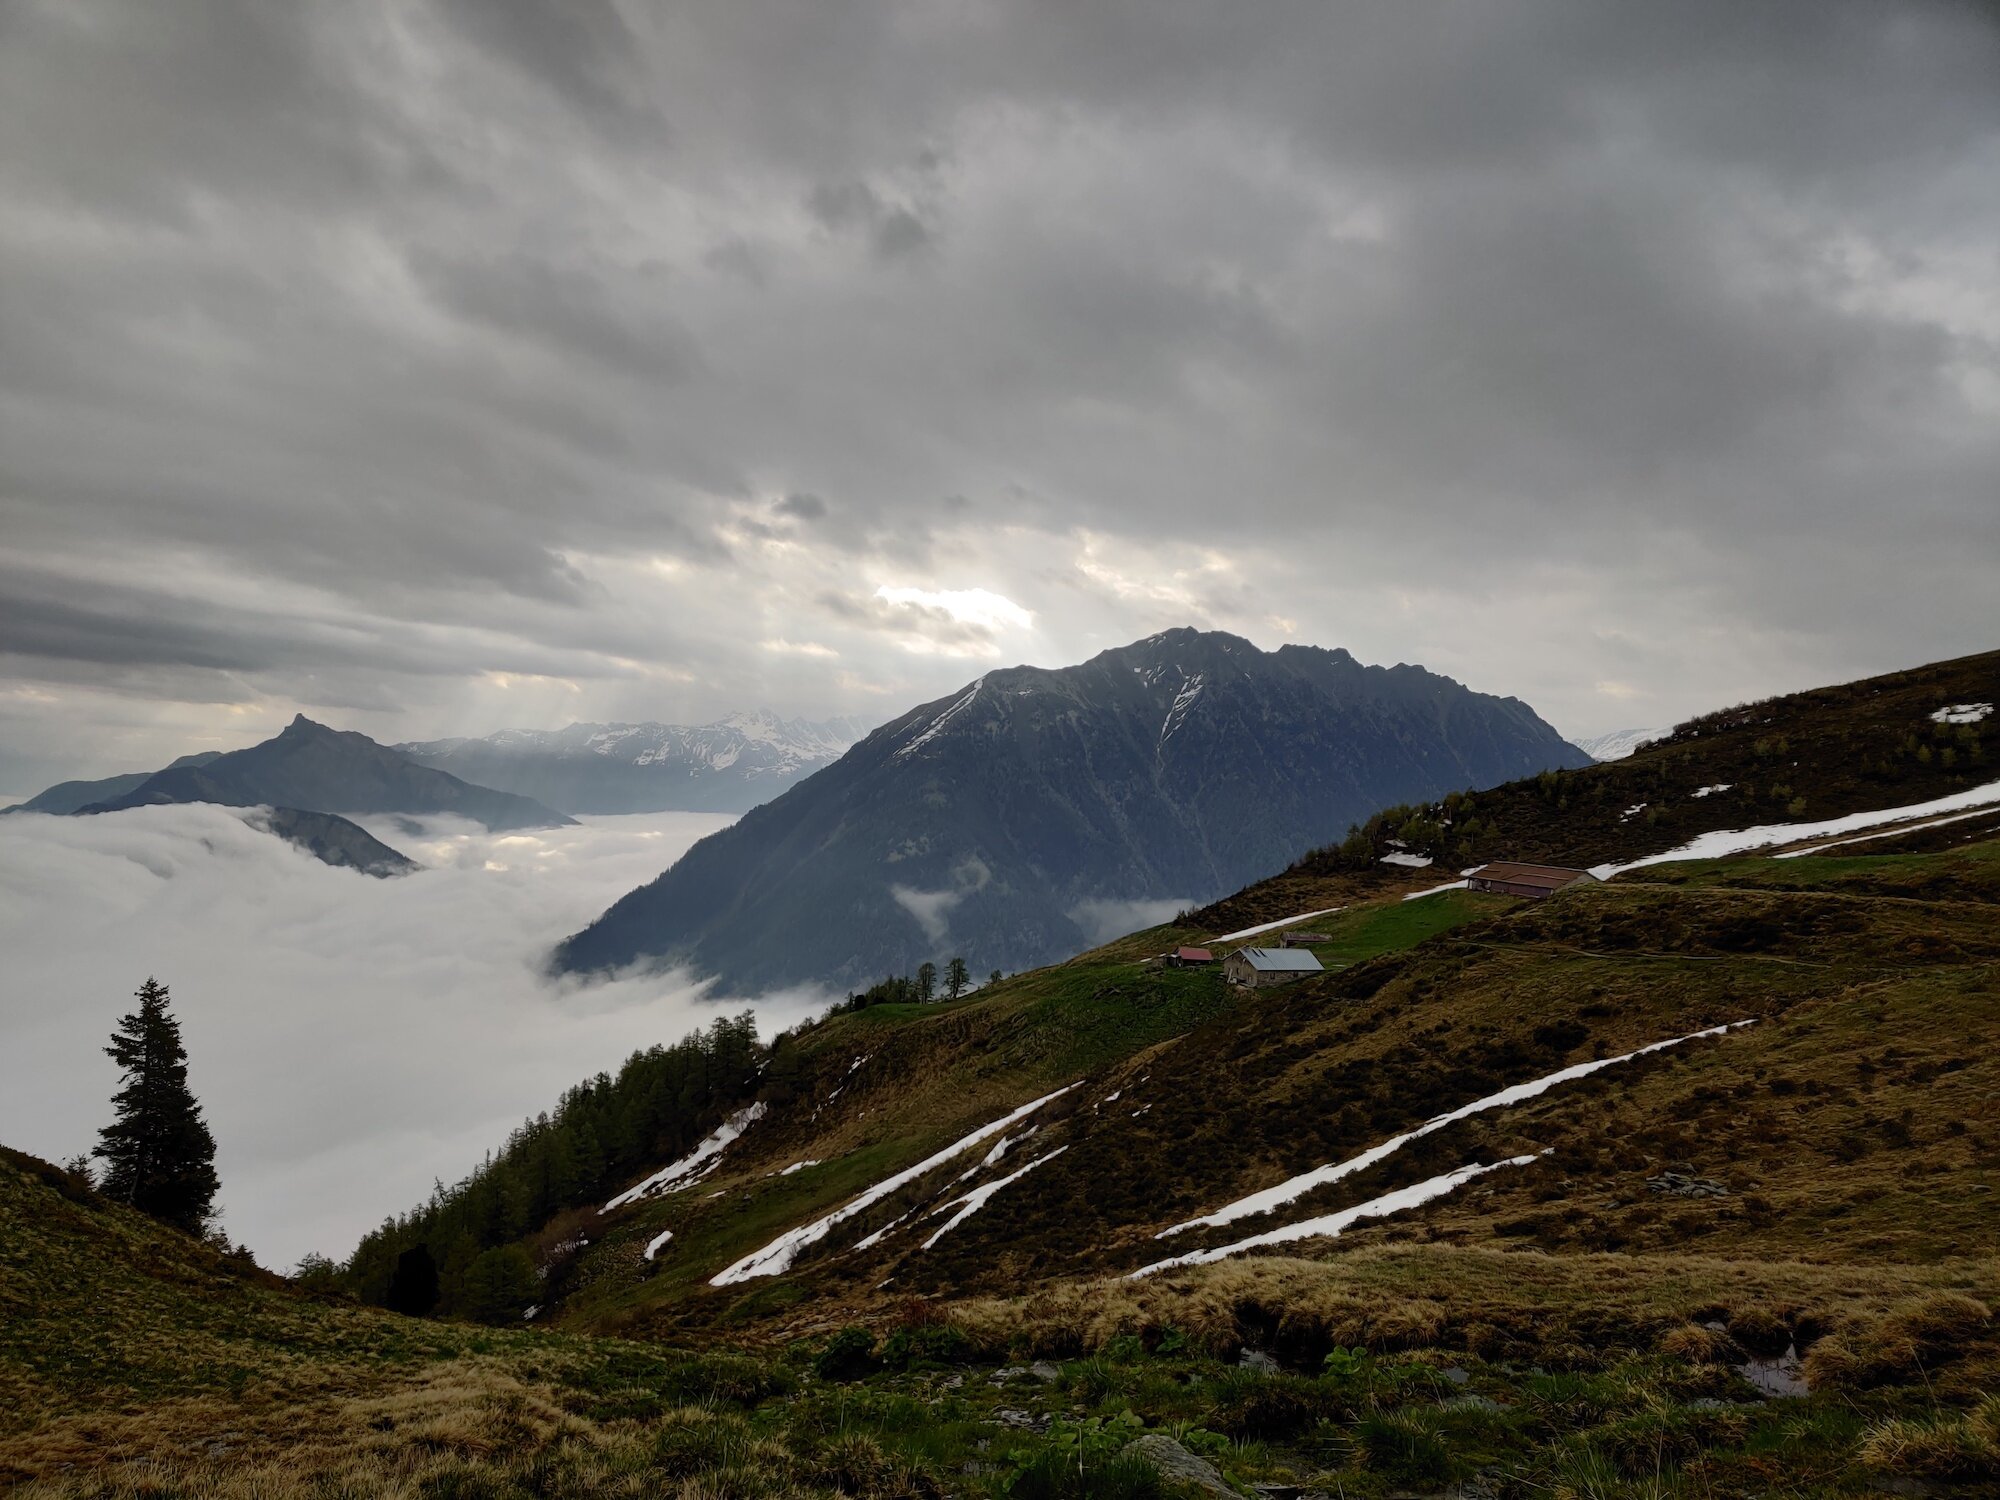 Views across to Alp Bovine